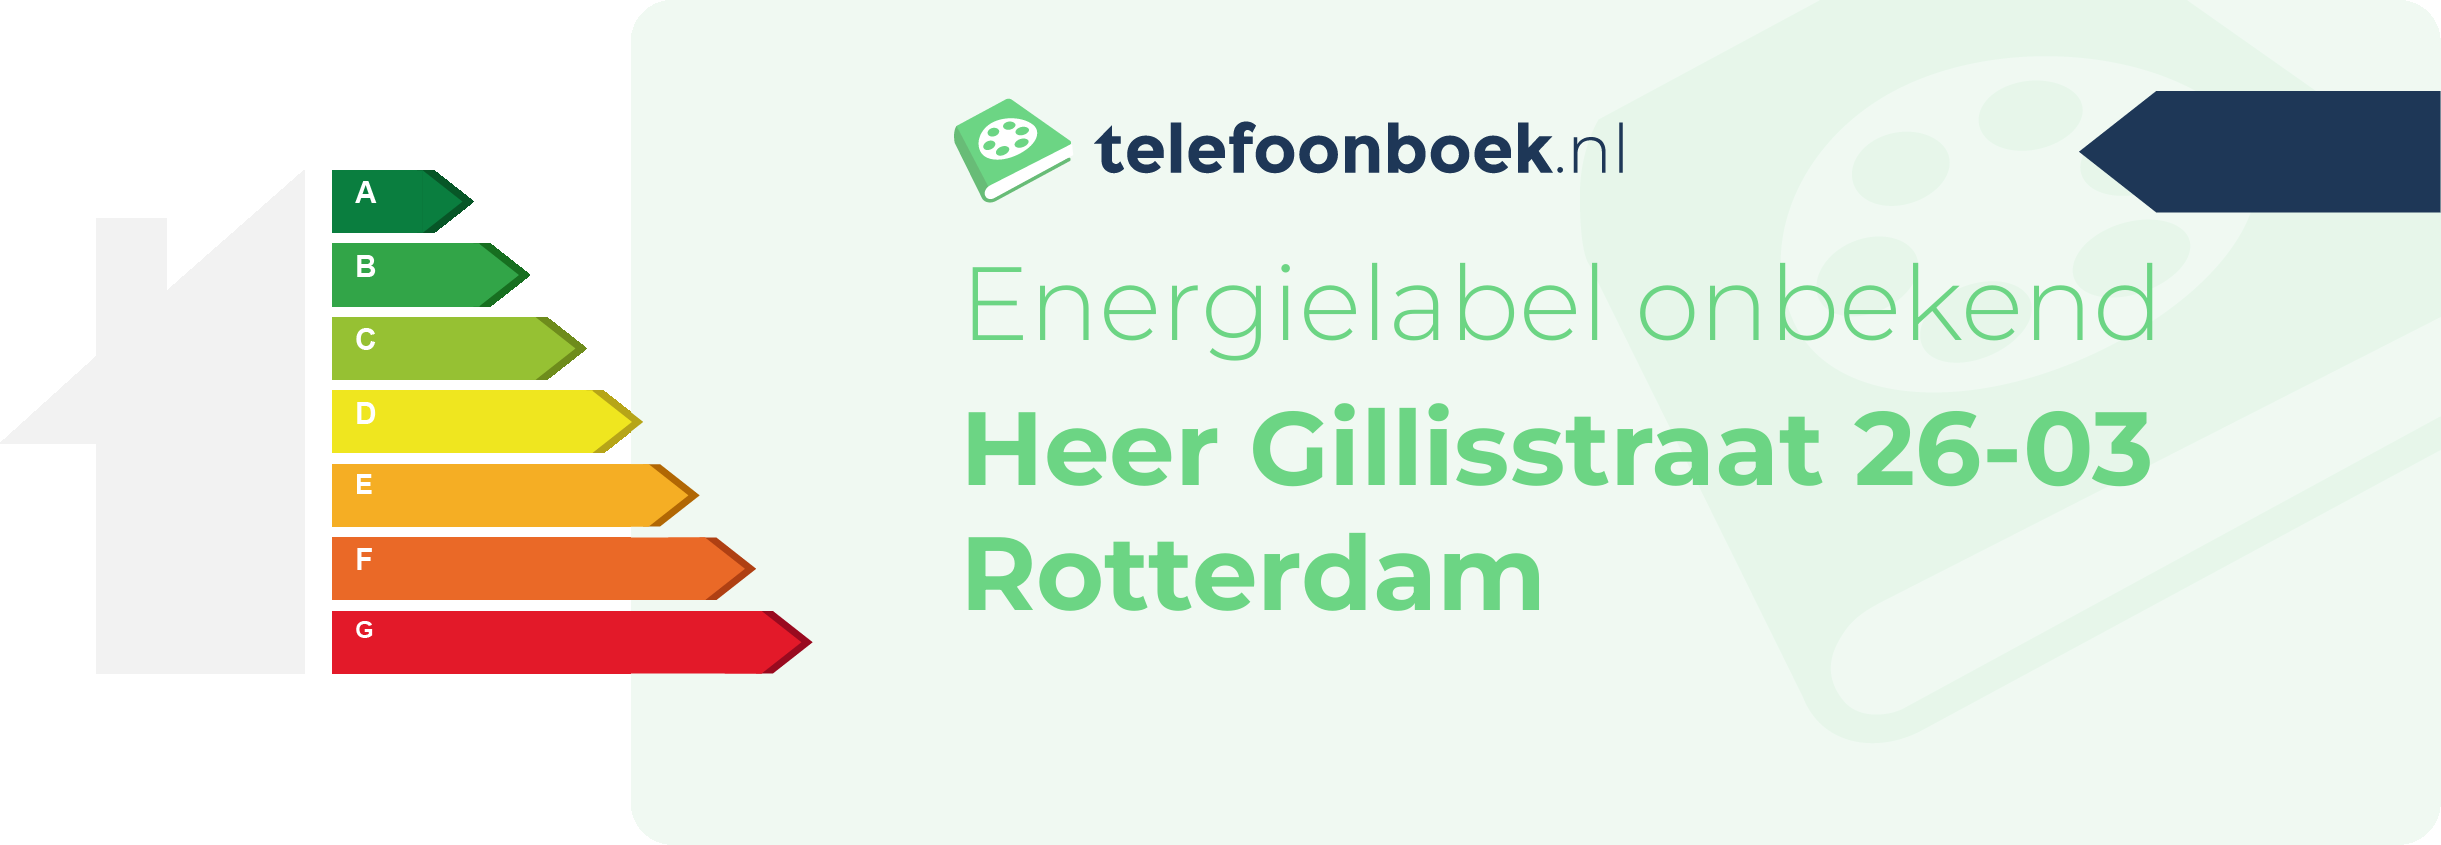 Energielabel Heer Gillisstraat 26-03 Rotterdam